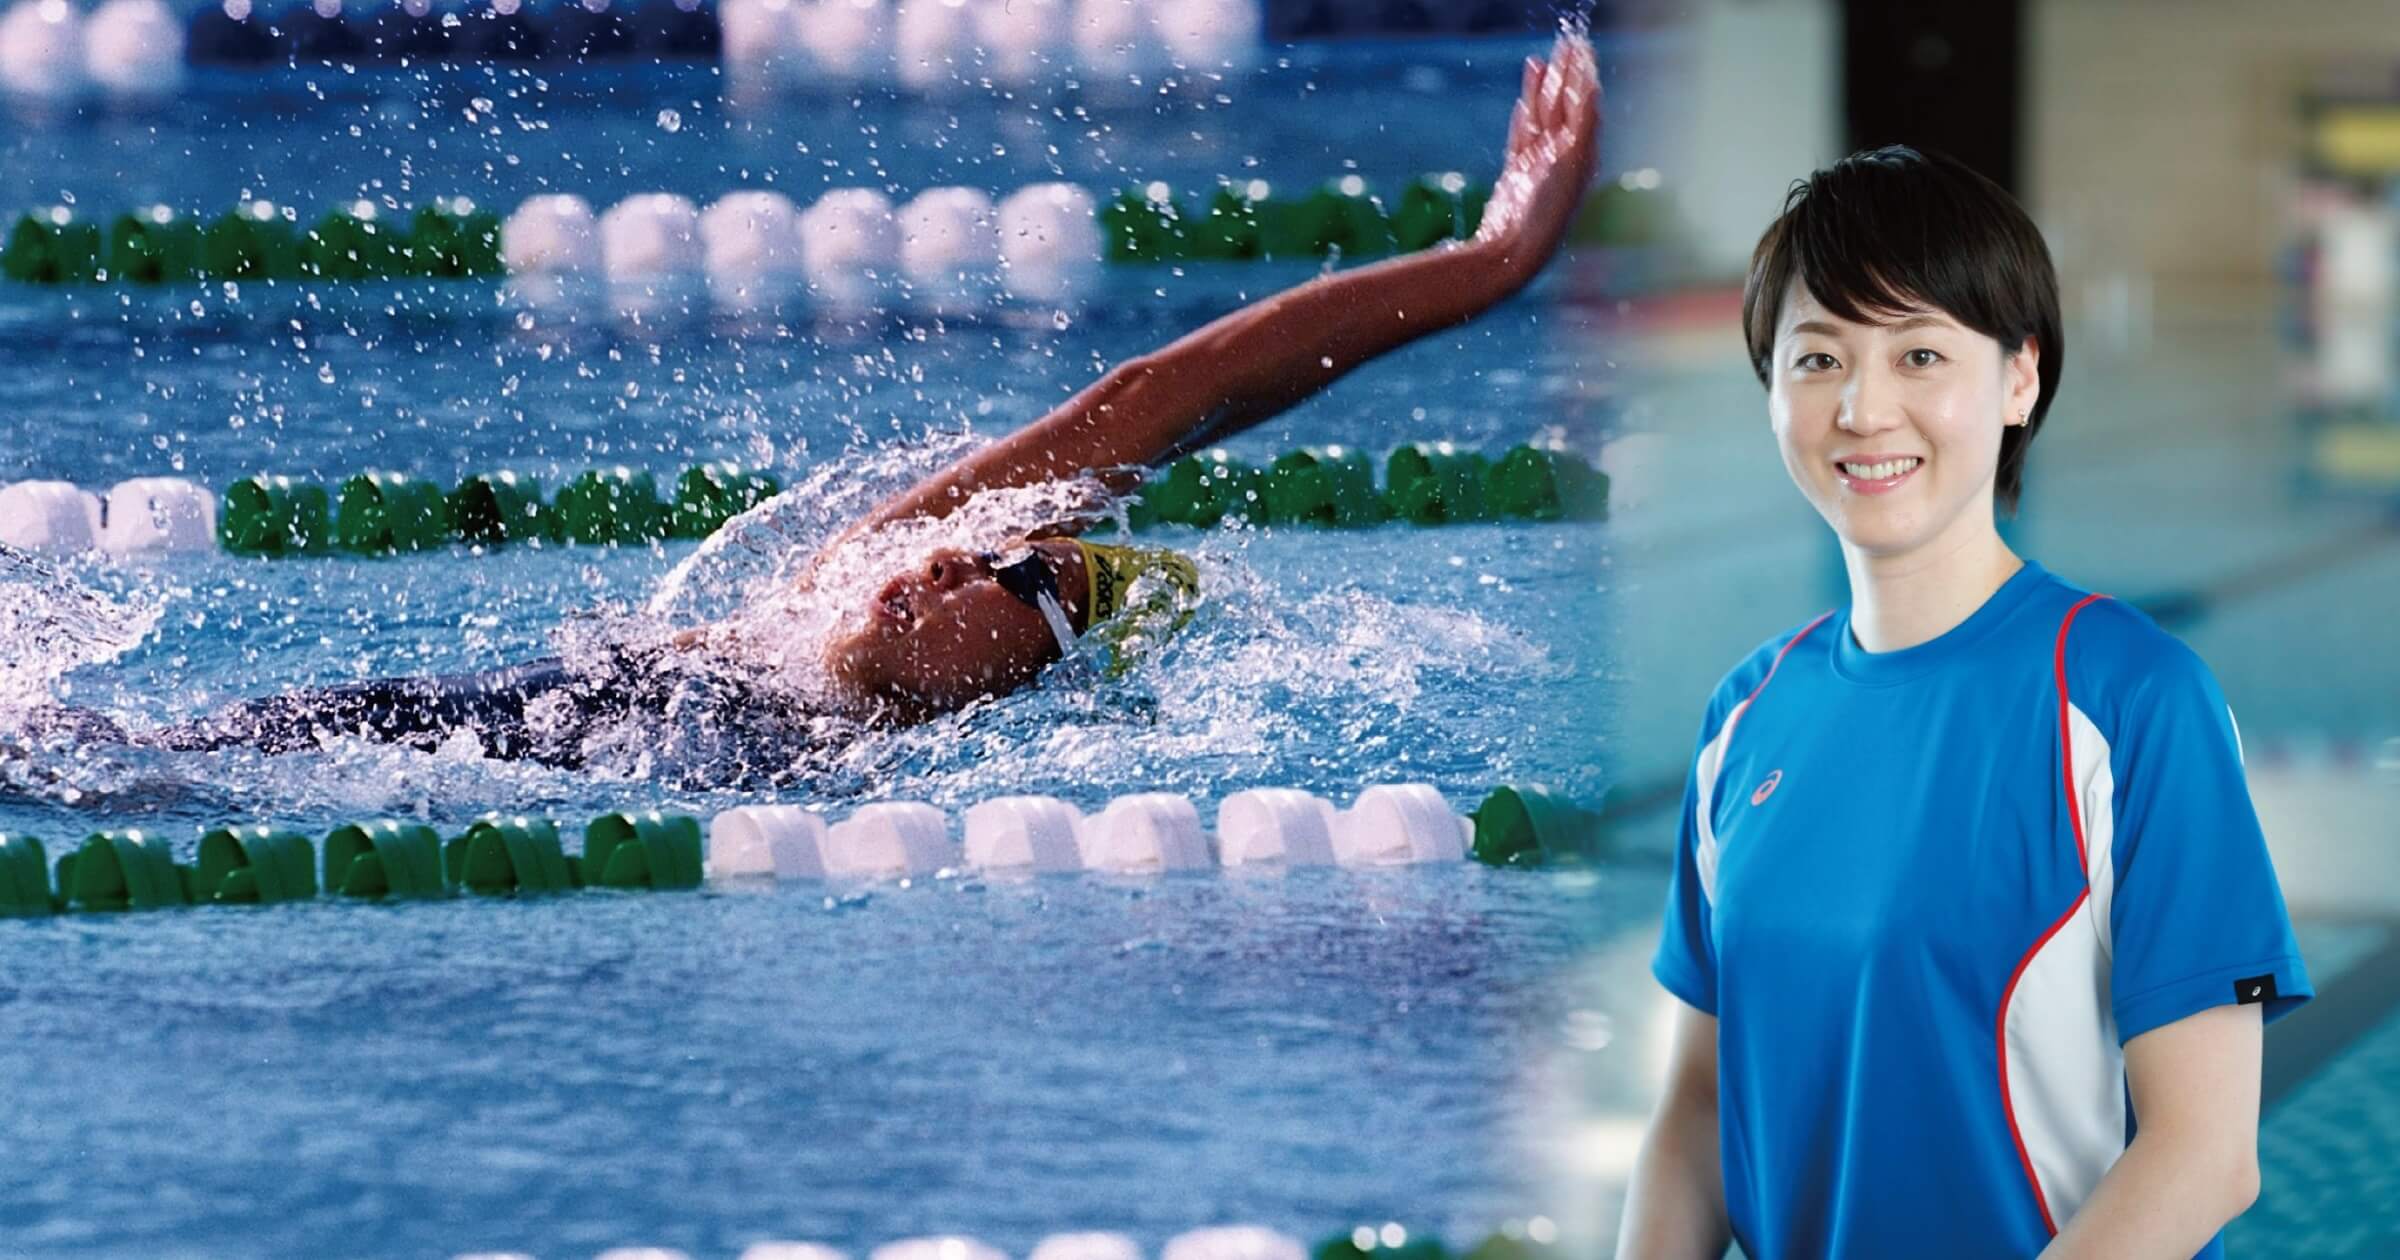 元・水泳日本代表選手、萩原智子さんに聞いた「習い事としての水泳をオススメしたい5つの理由」